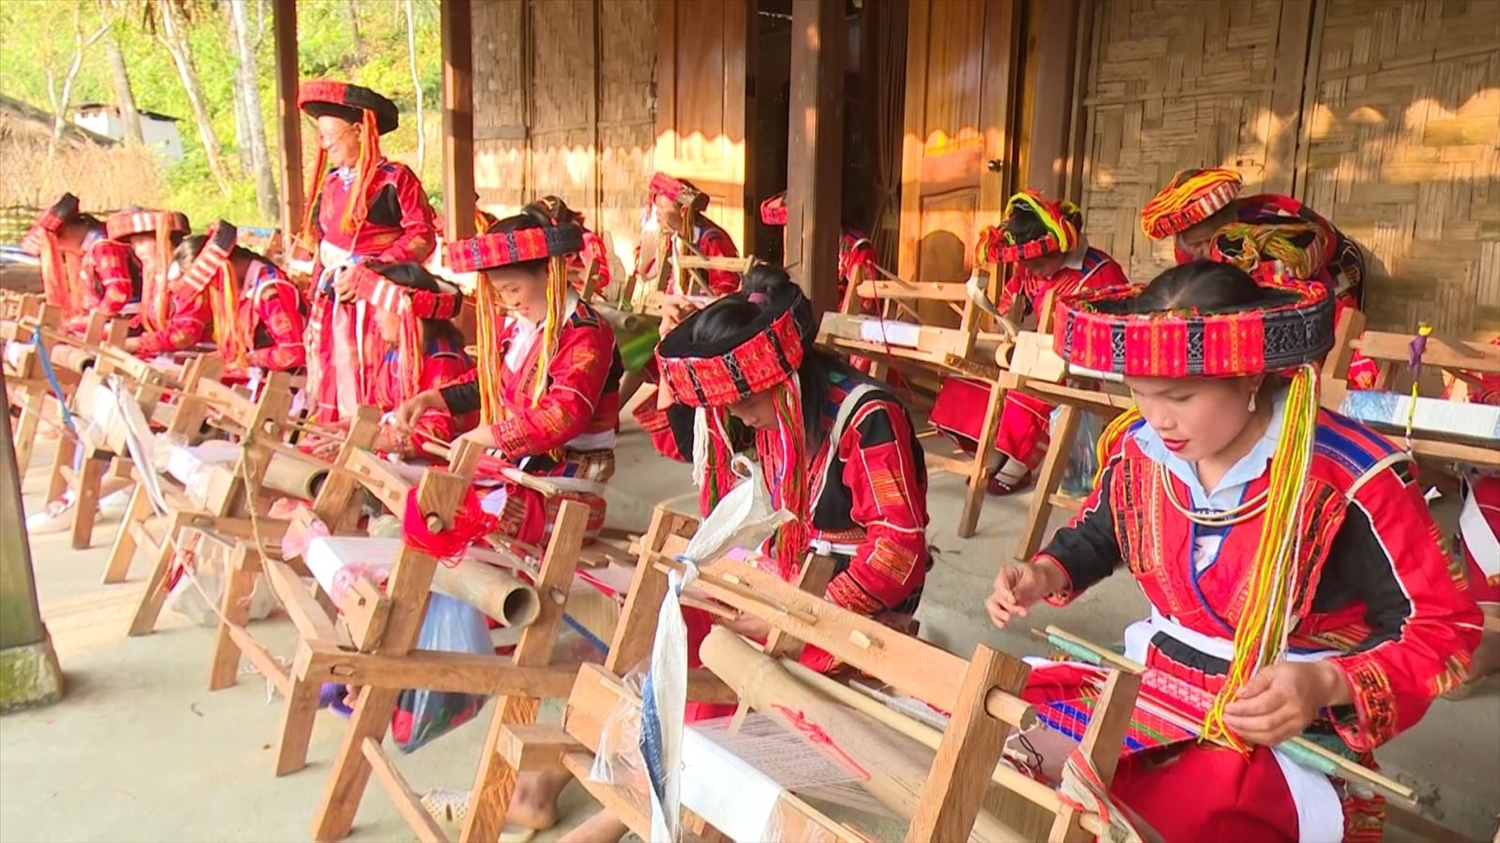 Lớp dạy nghề dệt thổ cẩm theo Quyết định 2086/QĐ-TTg được tổ chức tại thôn Thượng Minh, xã Hồng Quang, huyện Lâm Bình, tỉnh Tuyên Quang.